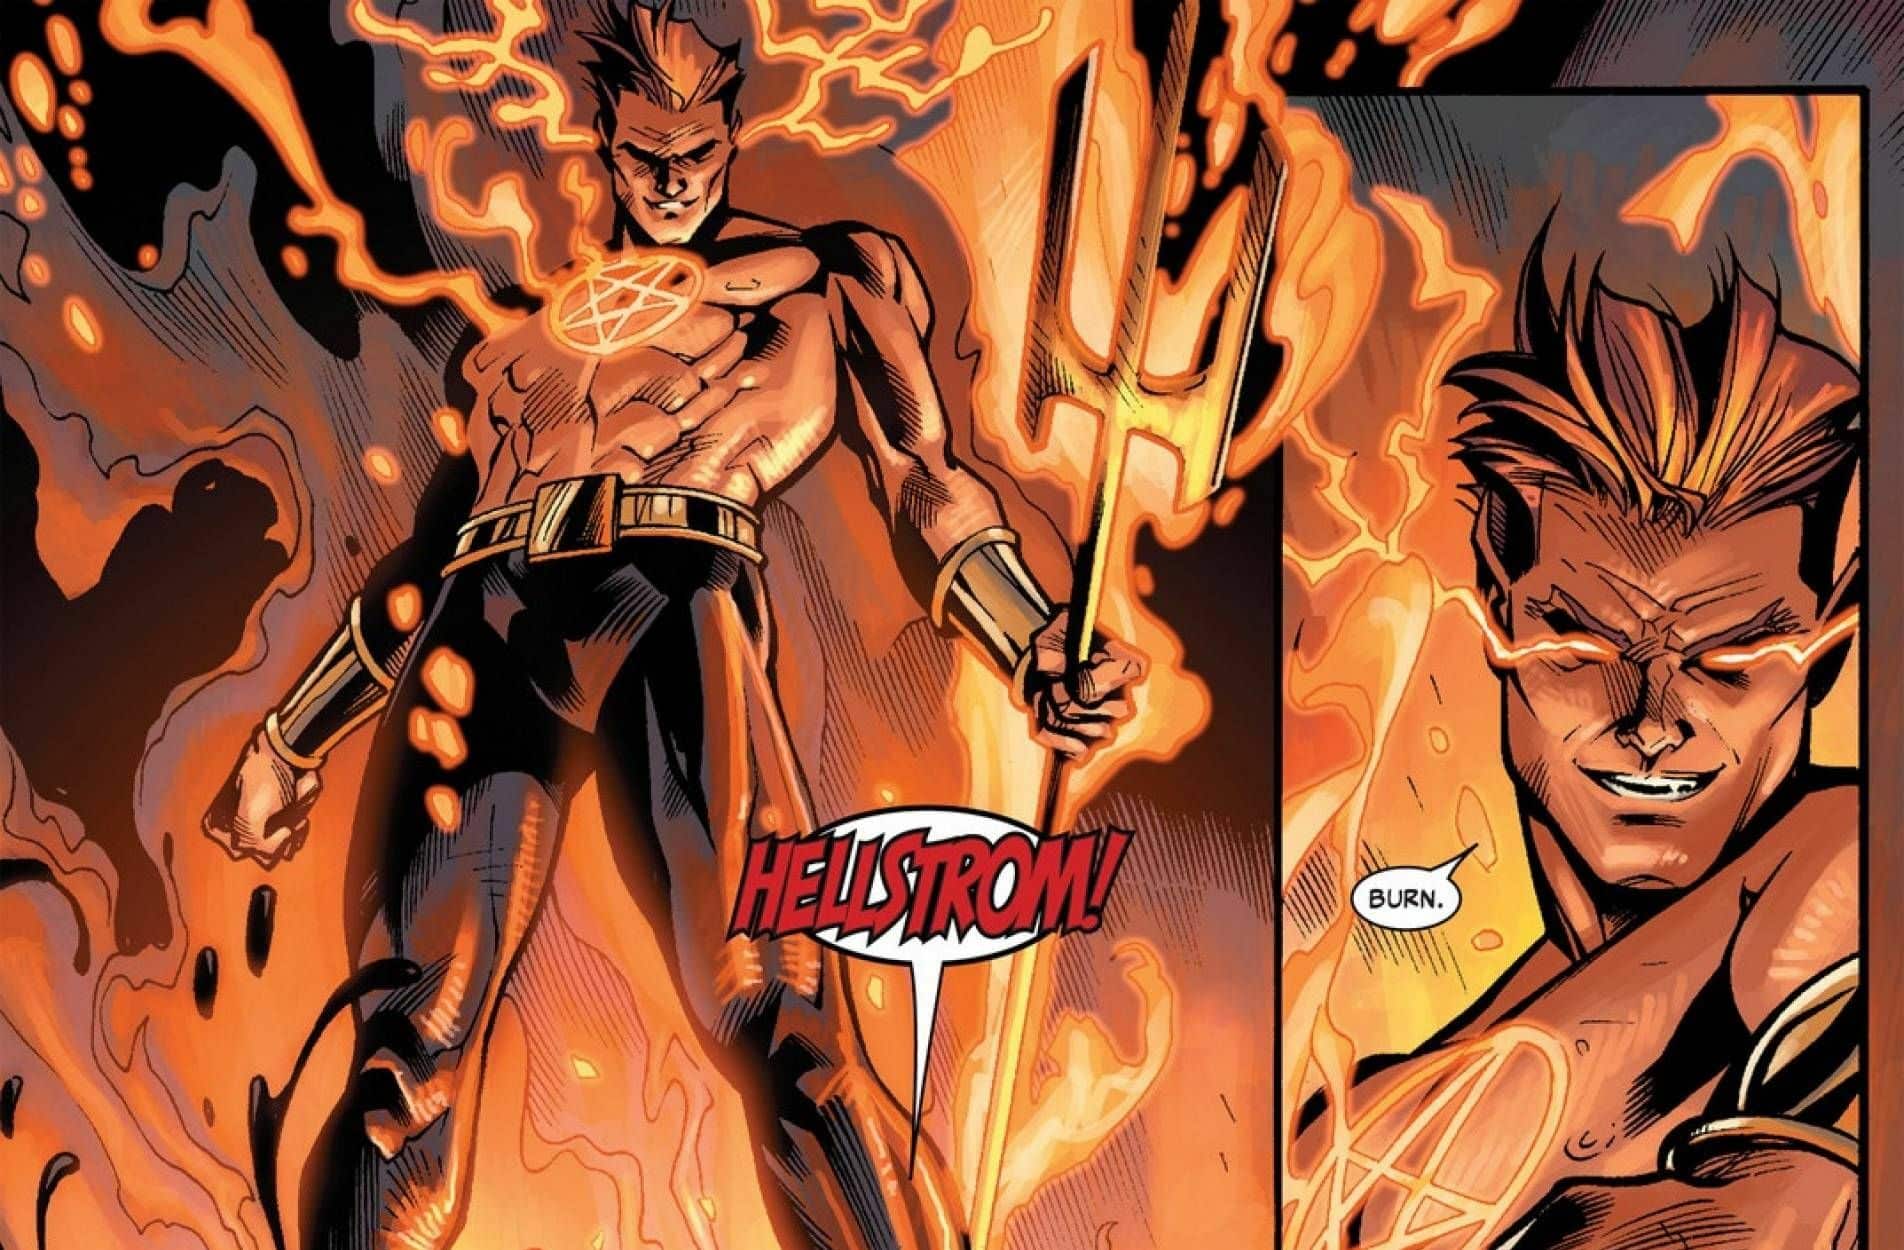 Helstrom: rivelato il logo ufficiale della serie Marvel